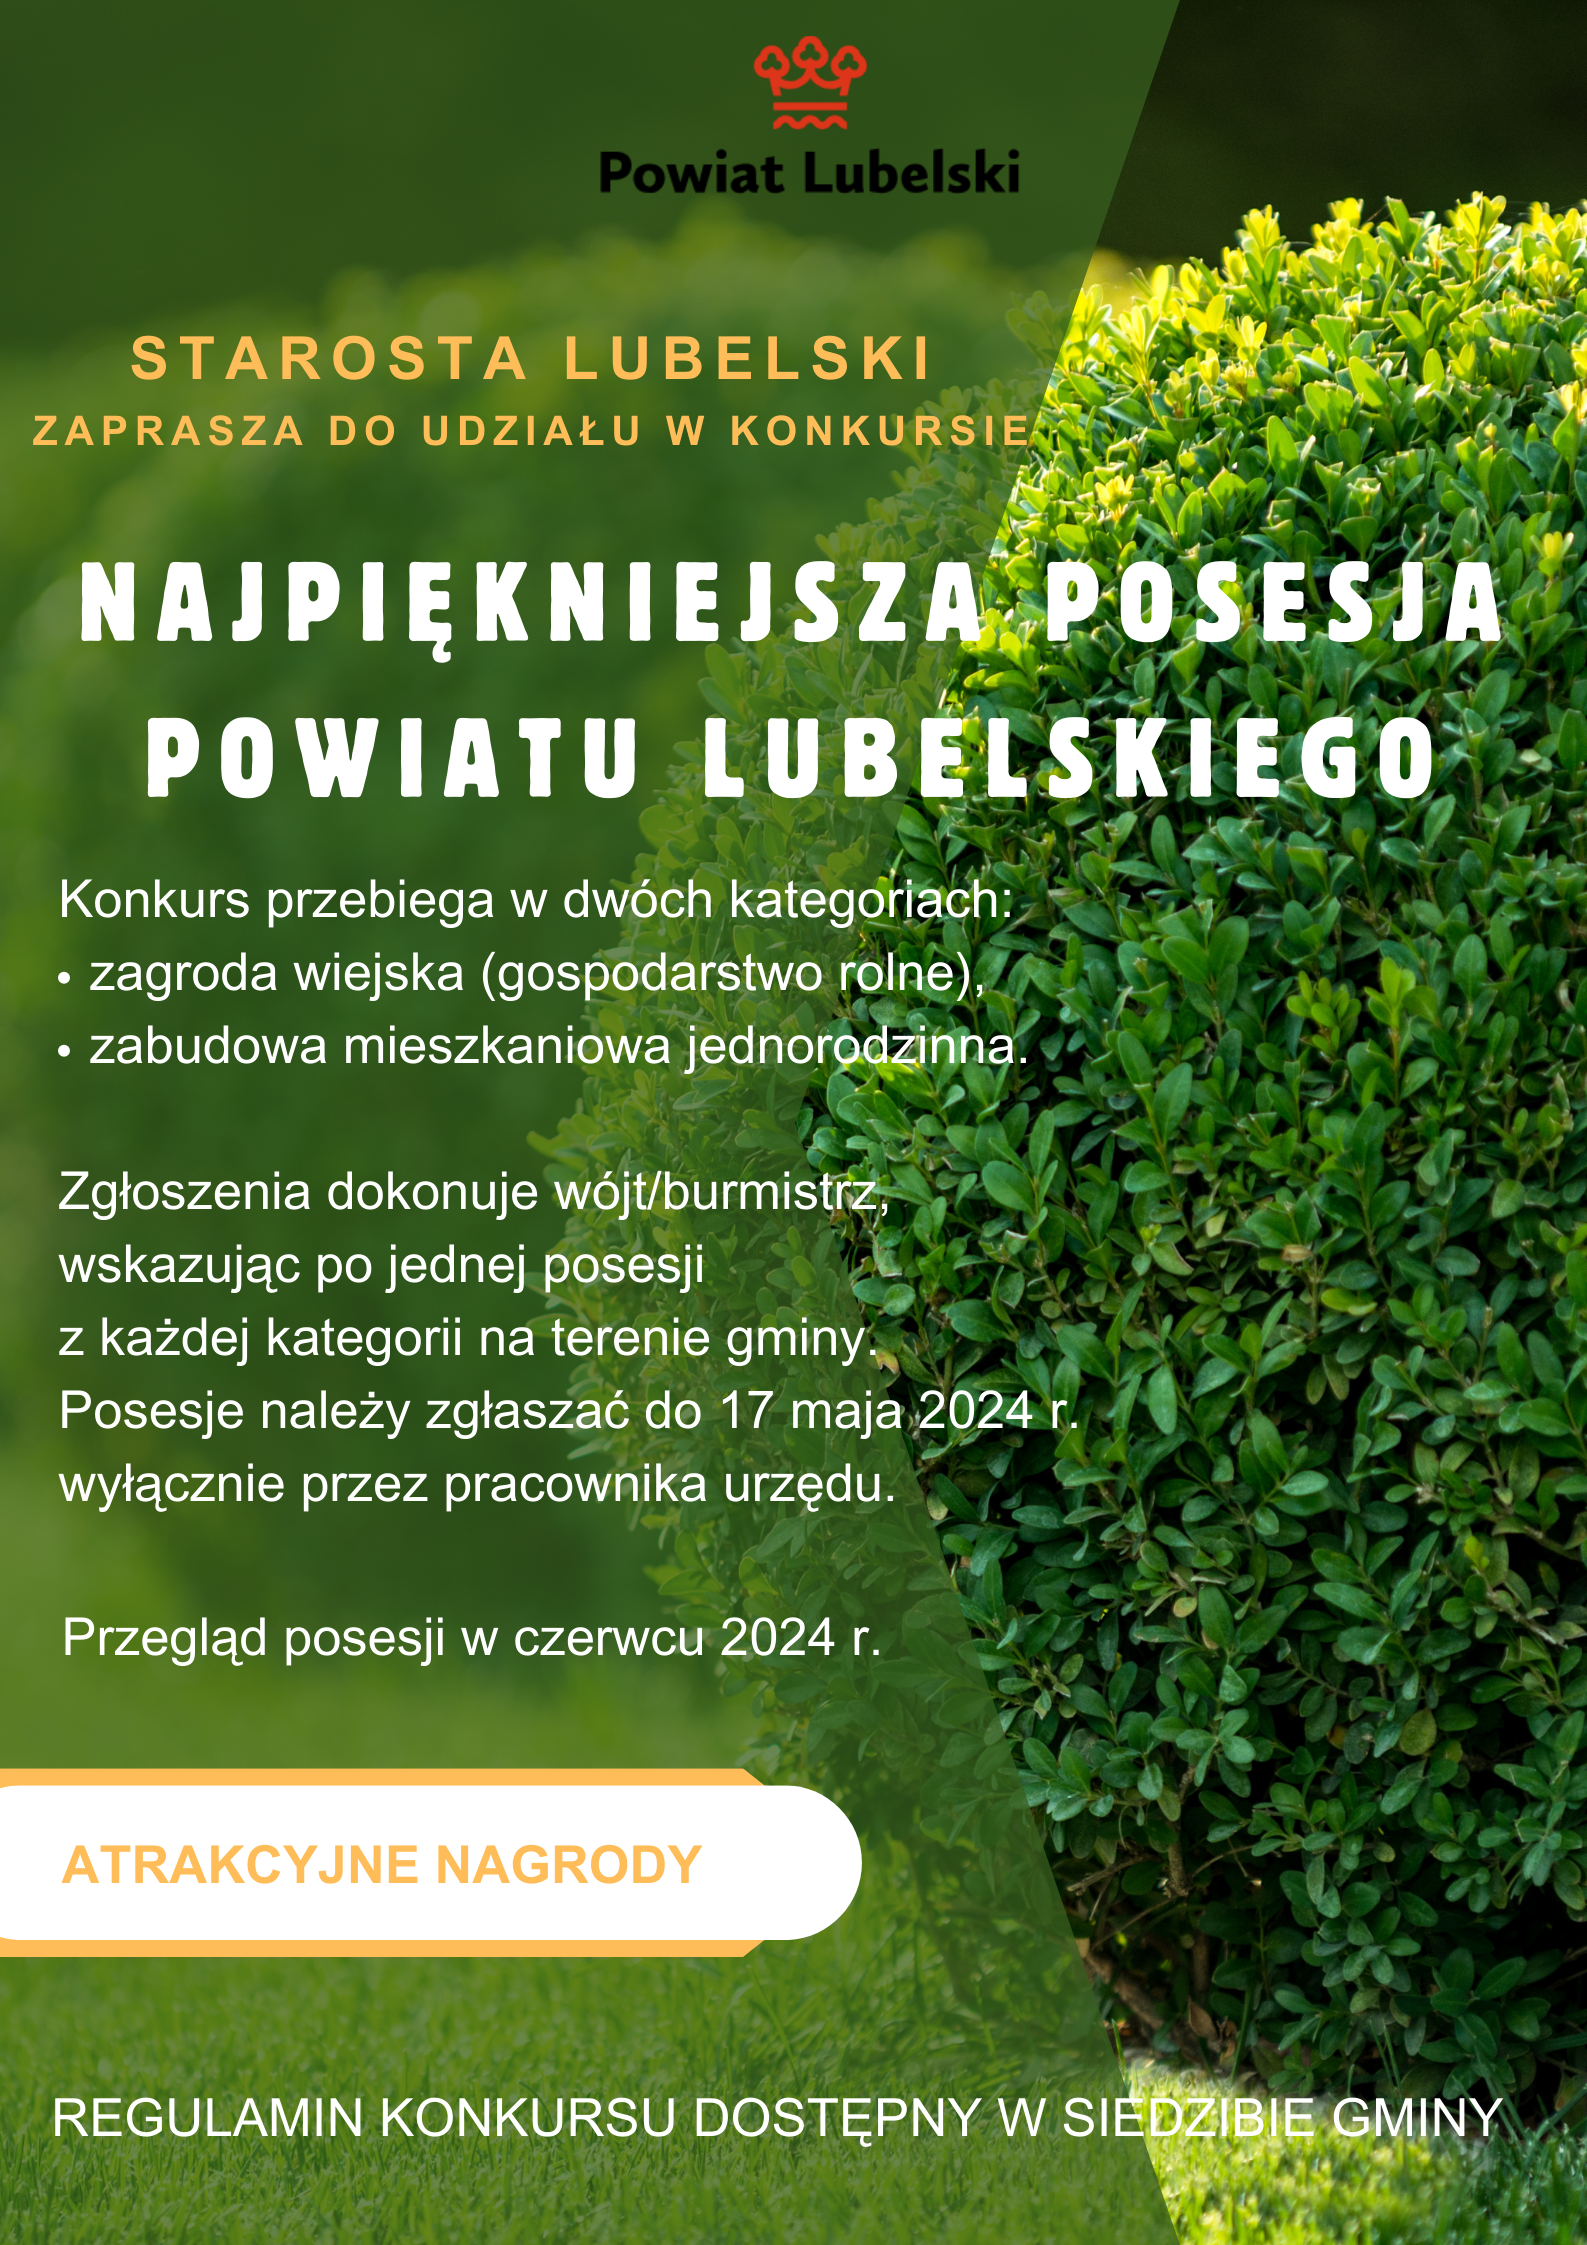 Grafika na zielonym tle przedstawia informacje dotyczące konkursu na najpiękniejszą posesję Powiatu Lubelskiego.